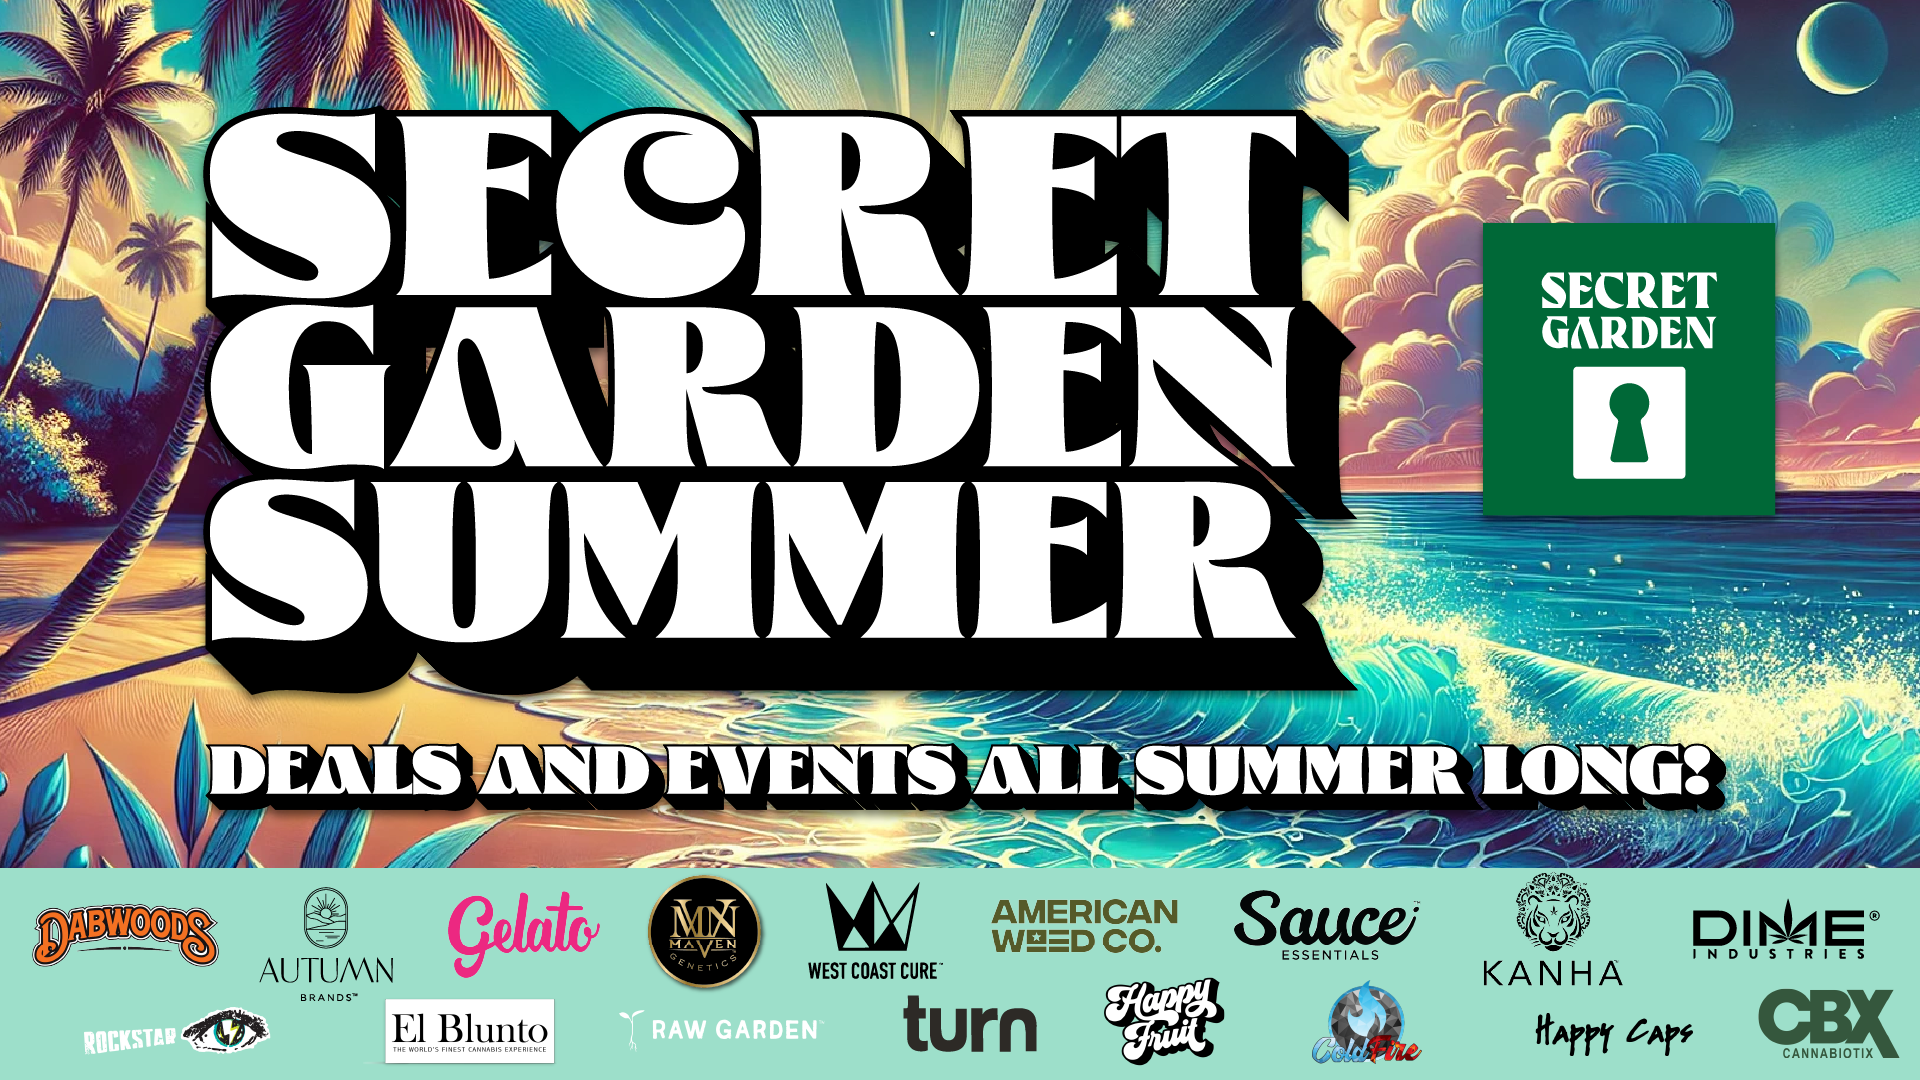 A flyer for Secret Garden Summer